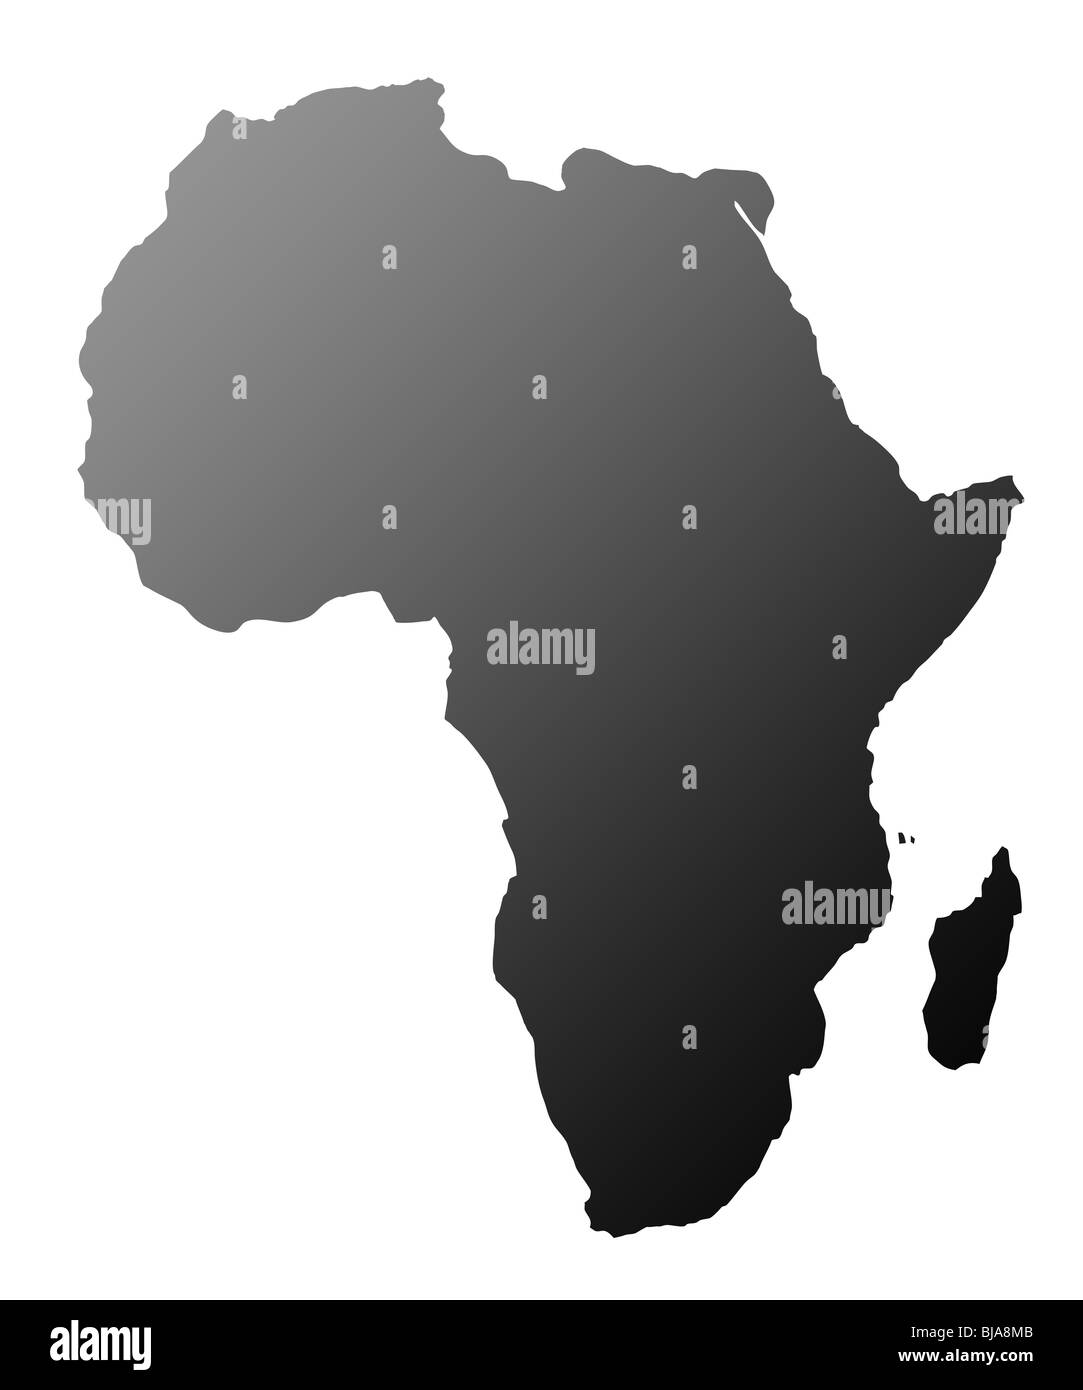 Silhouette de continent africain, isolé sur fond blanc. Banque D'Images